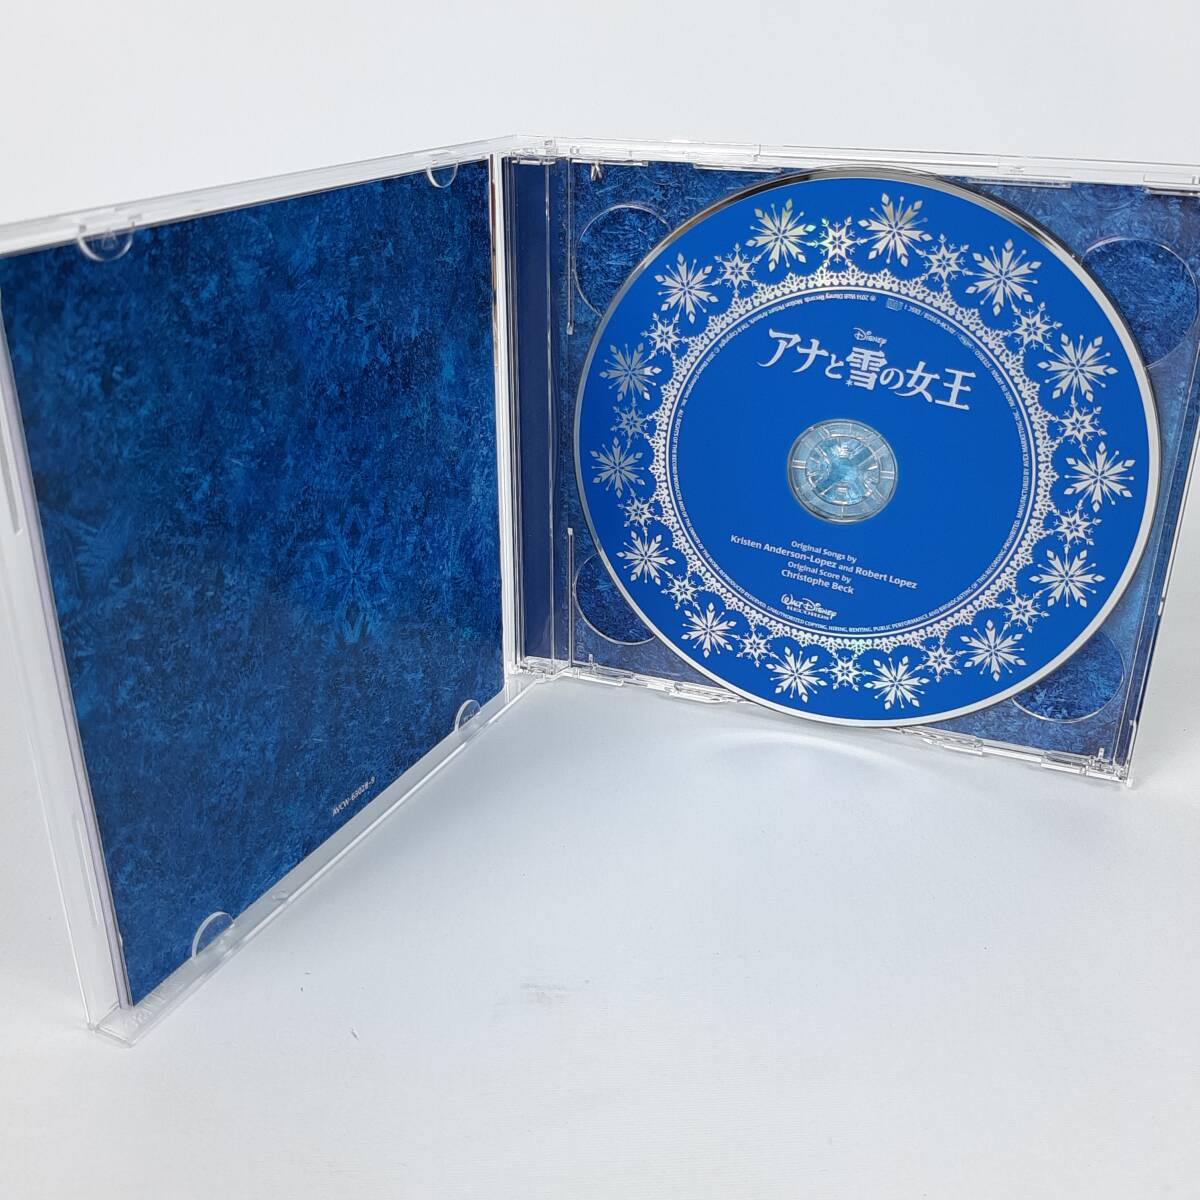 「アナと雪の女王」 オリジナル・サウンドトラックーデラックス・エディションー[初回盤スリーブケース付]の画像3